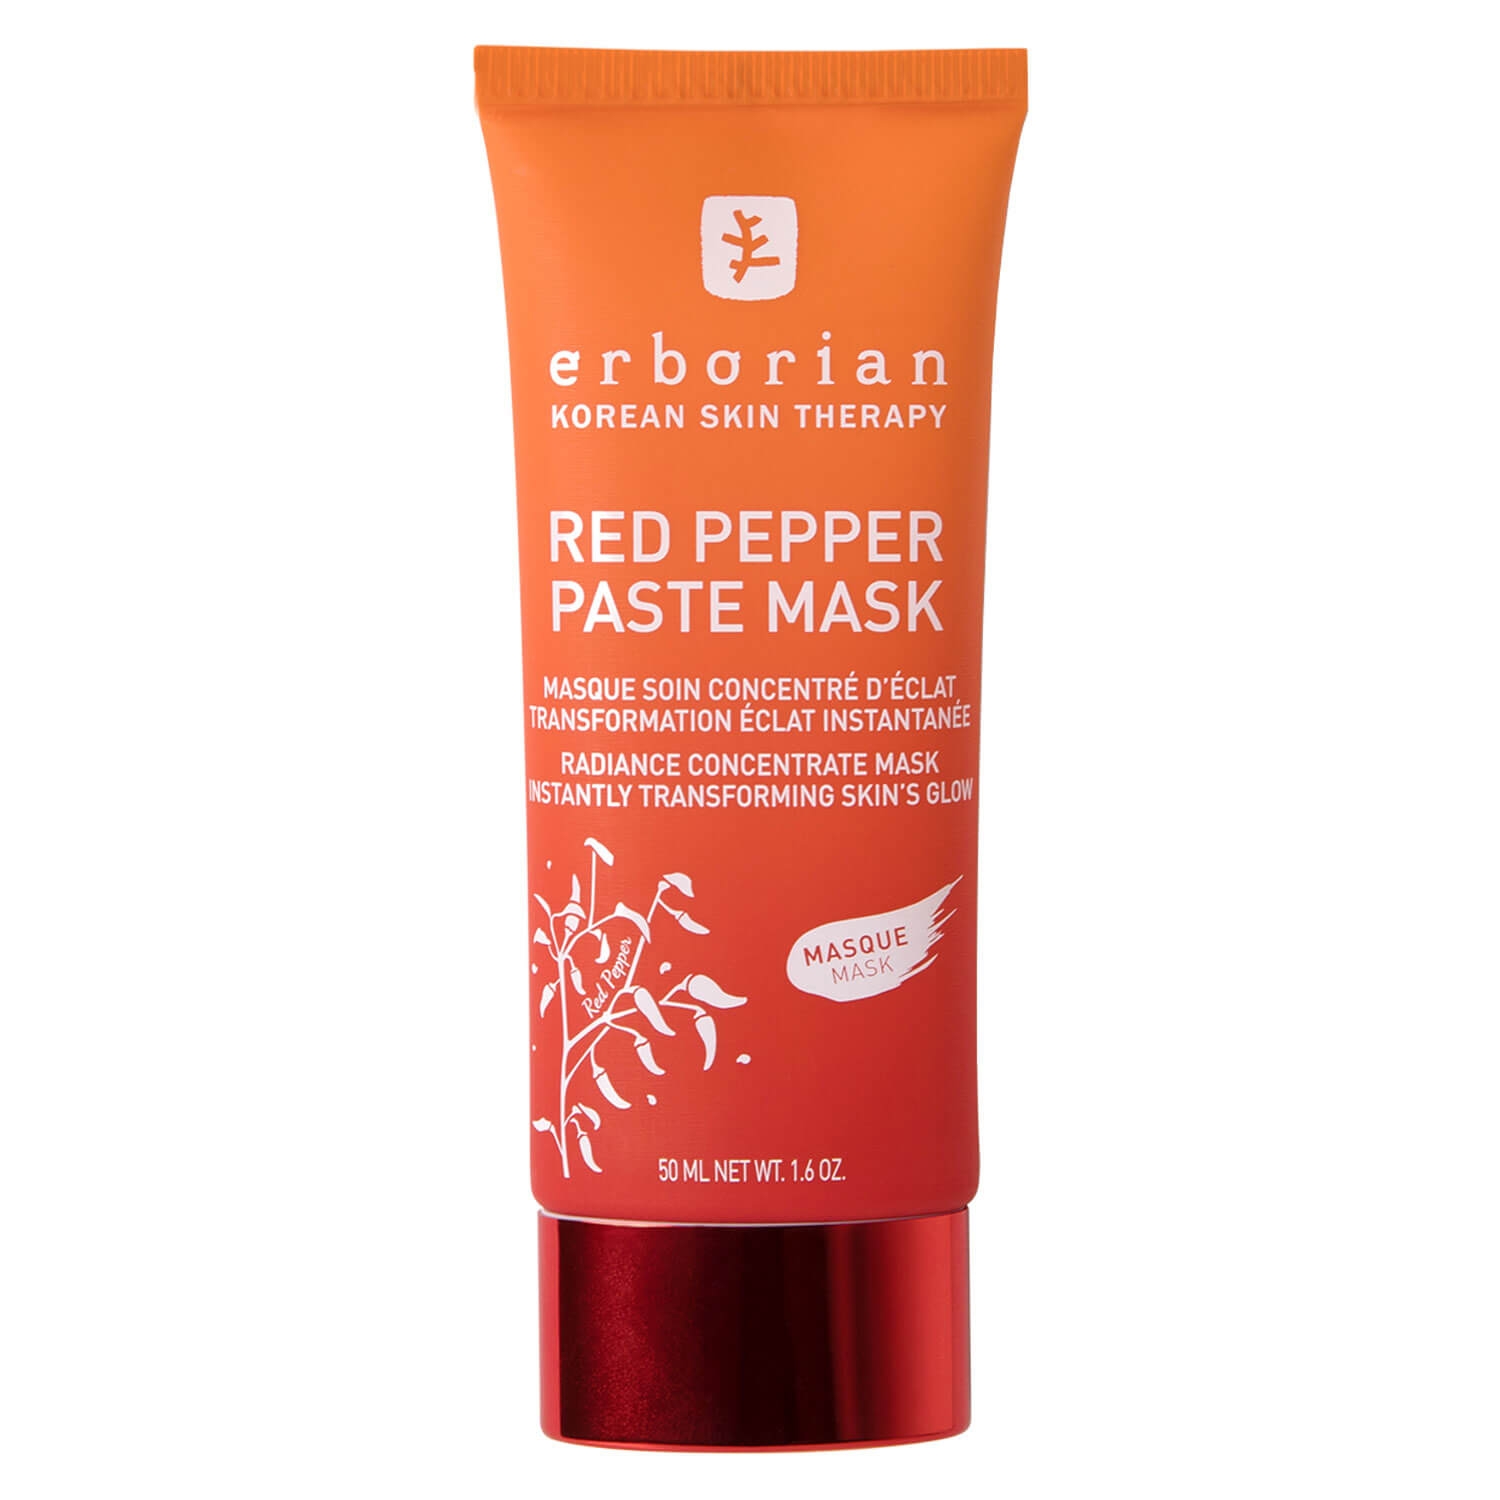 Produktbild von Red Pepper - Paste Mask